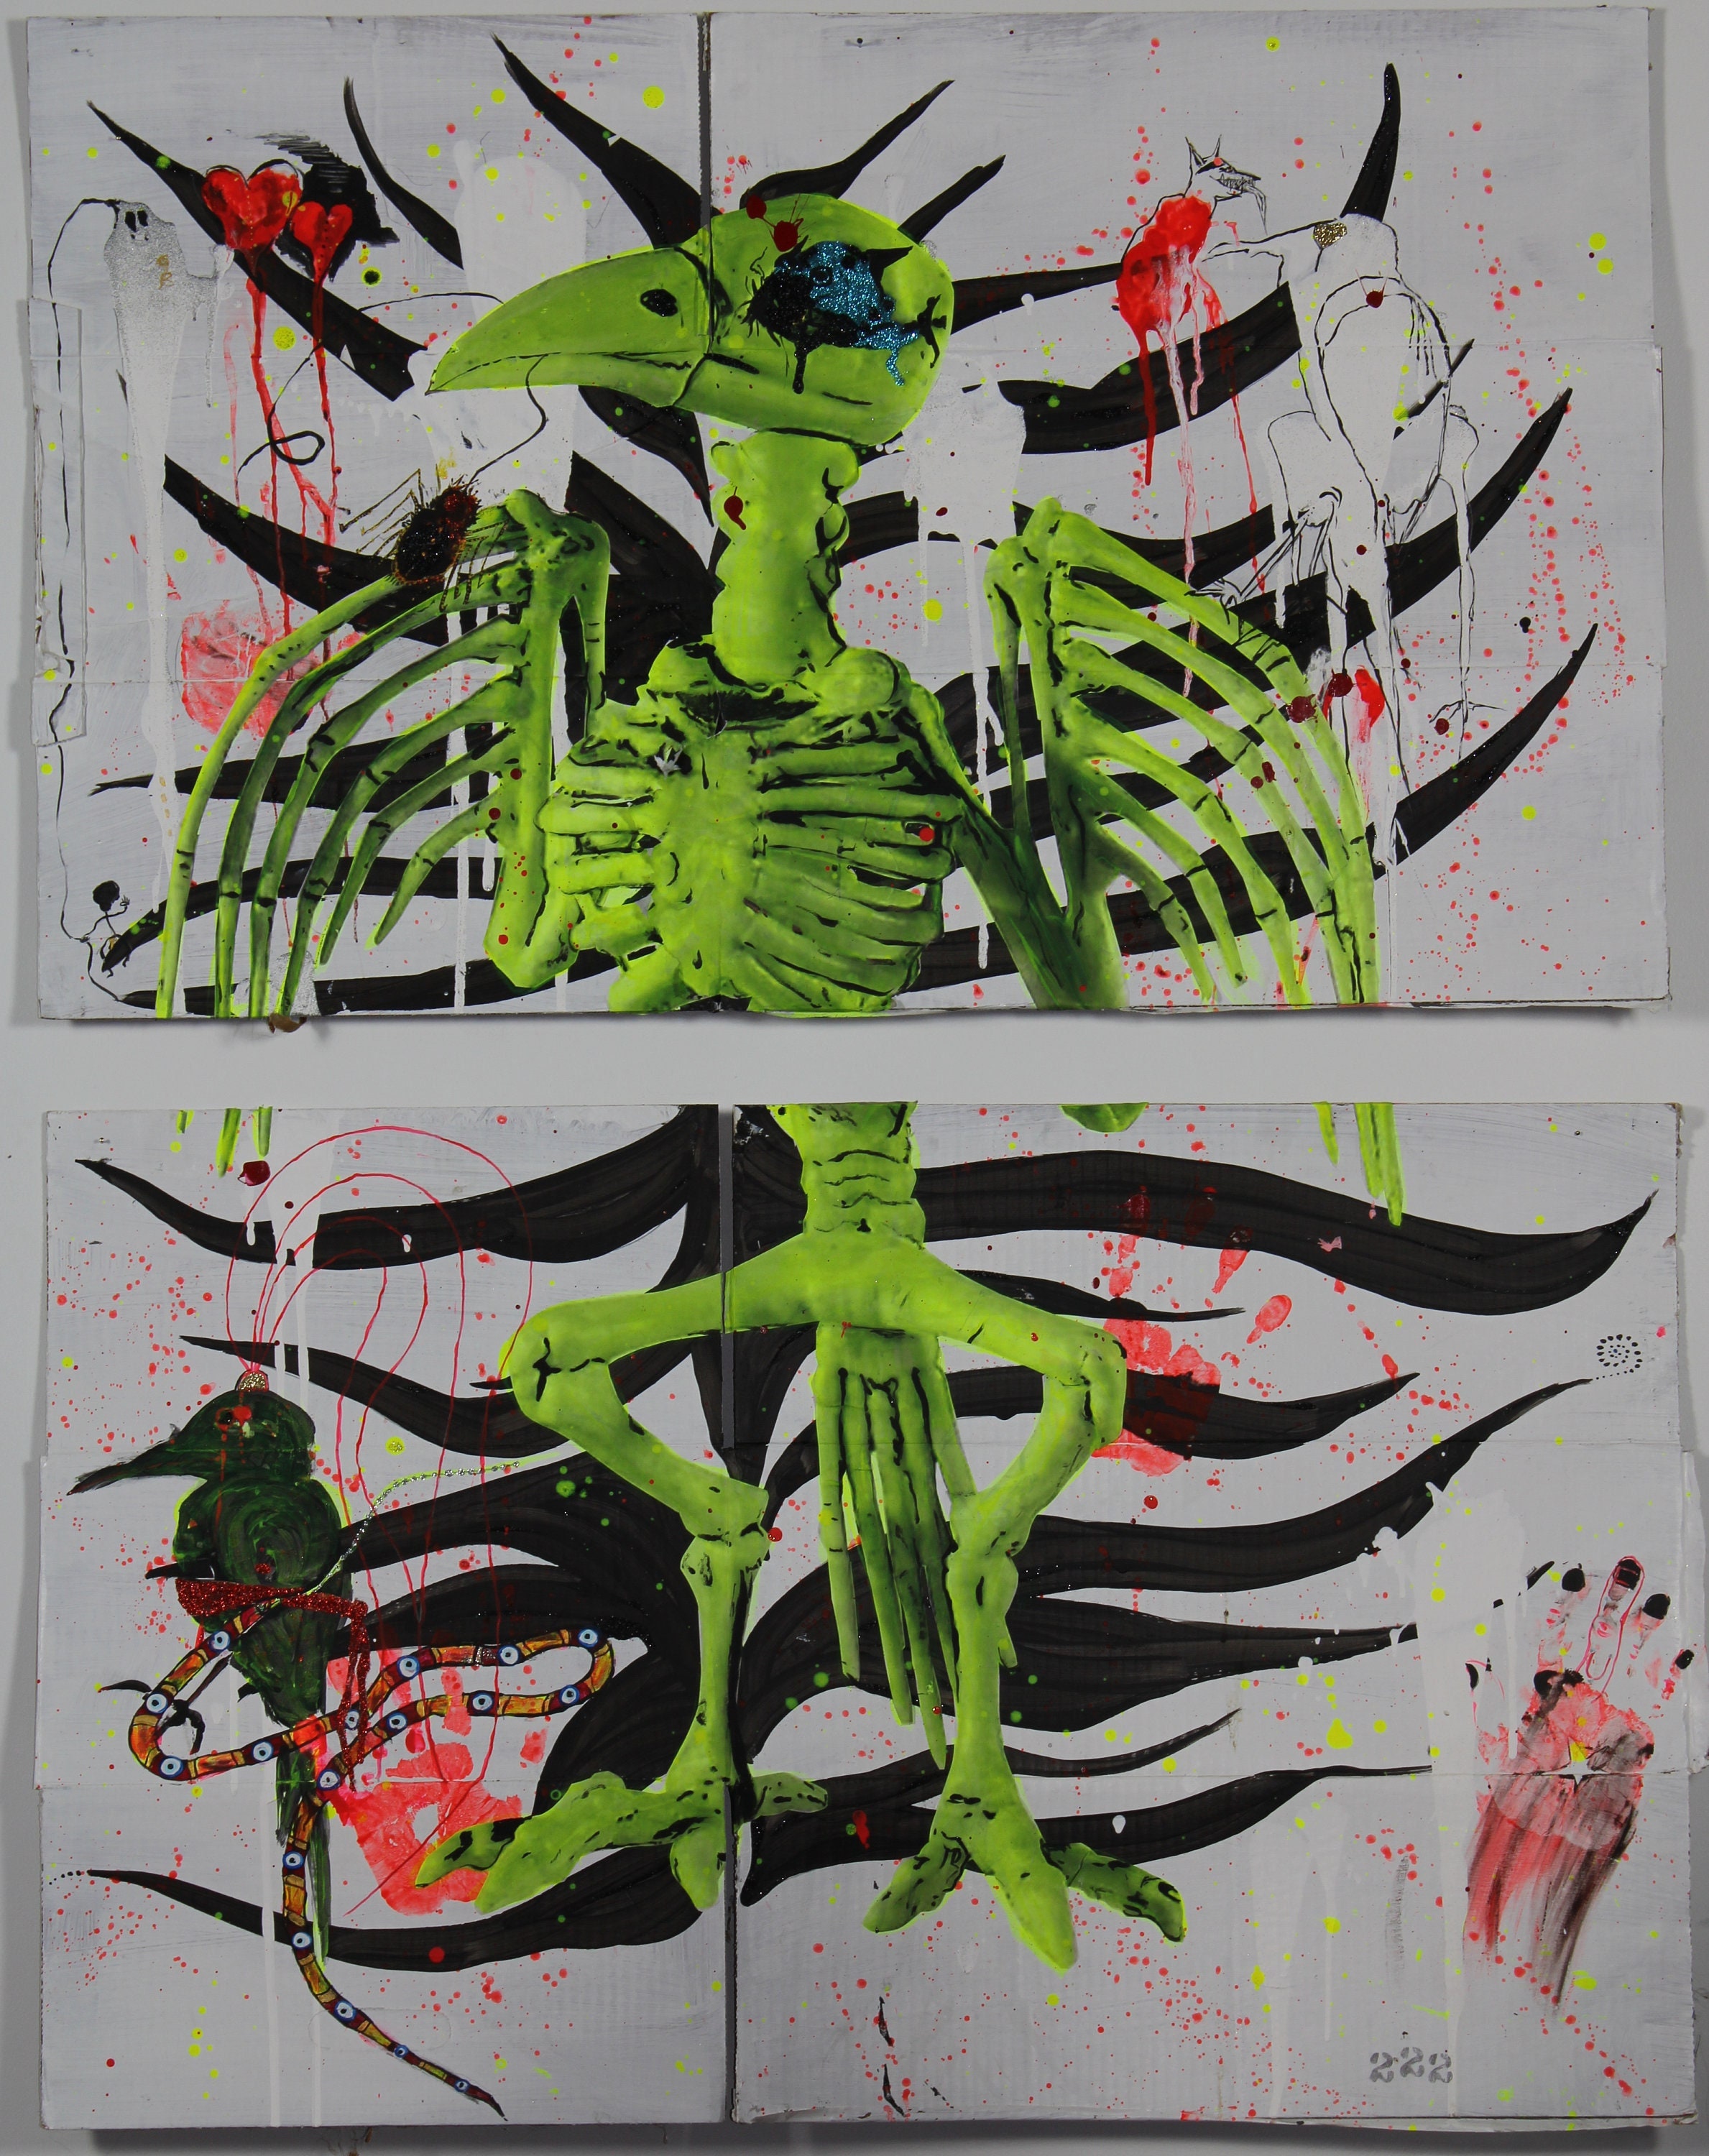 45x32cm Death NYC Ltd Ed Hand Signed Graffiti Pop Art Print "